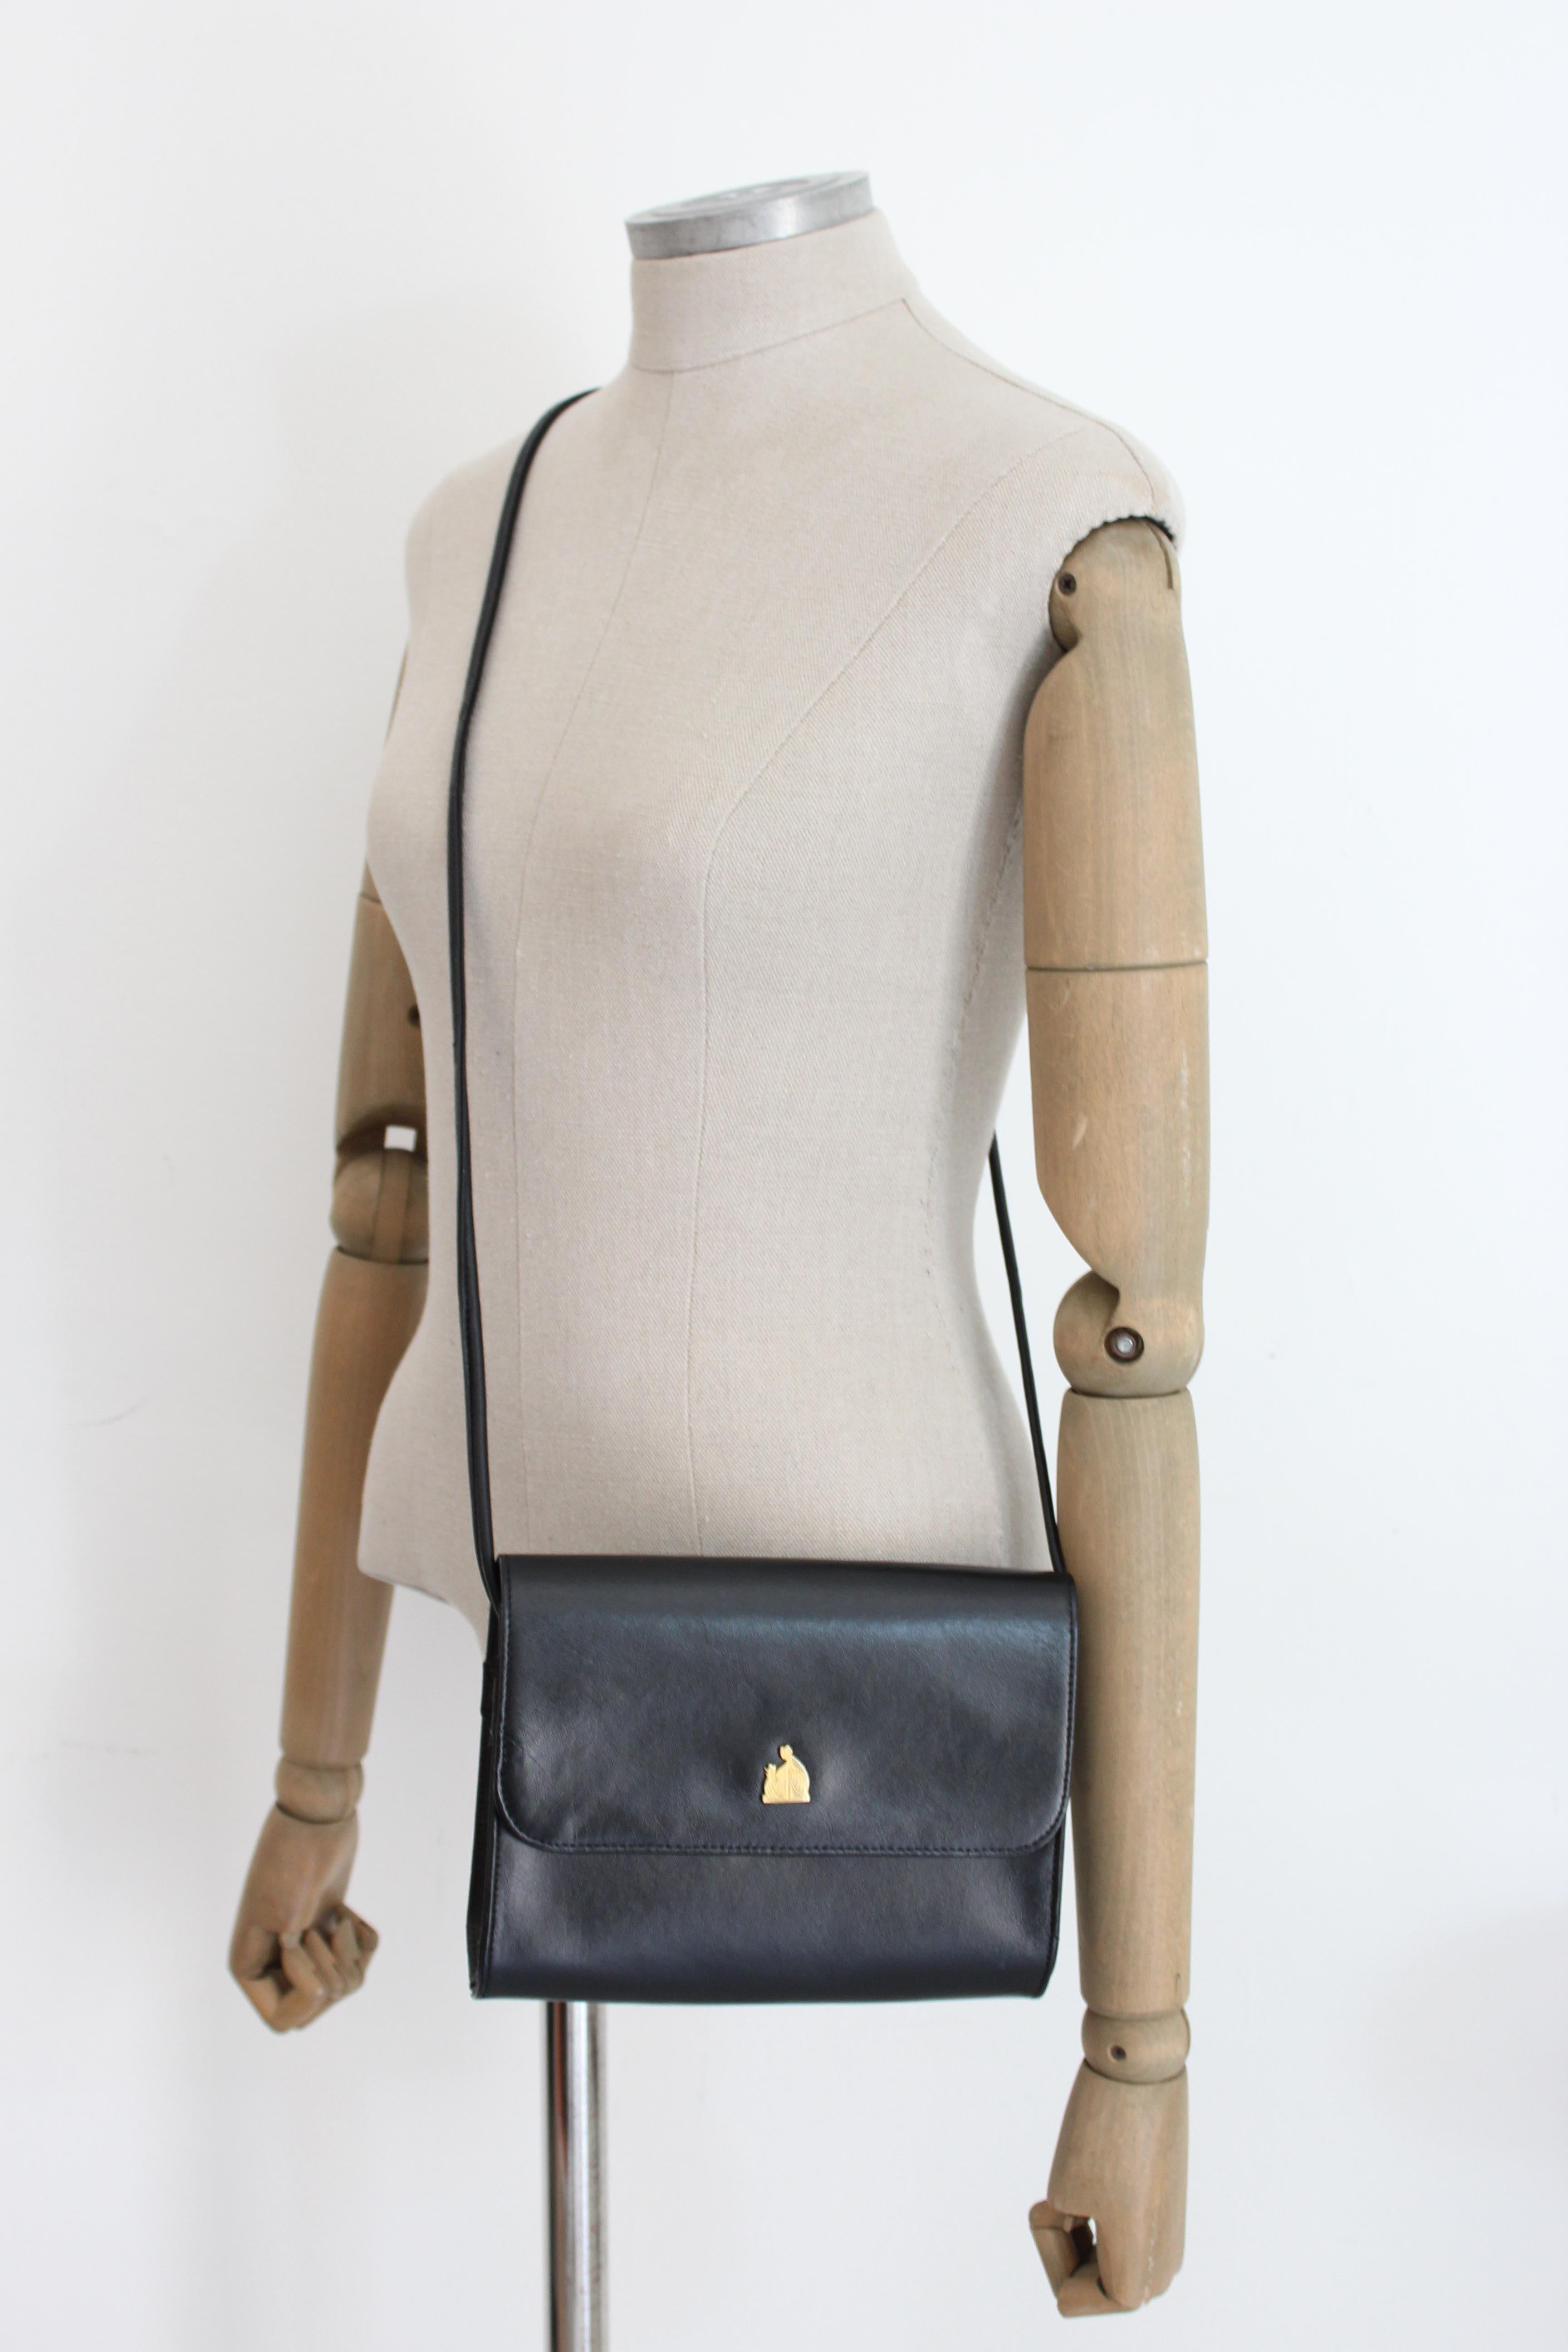 Lanvin vintage 80s bag. Black shoulder strap, clip button closure and golden logo. 100% leather fabric. Made in France.

Height: 17 cm
Width: 21 cm
Depth: 3 cm
Shoulder strap height (light): 53 cm